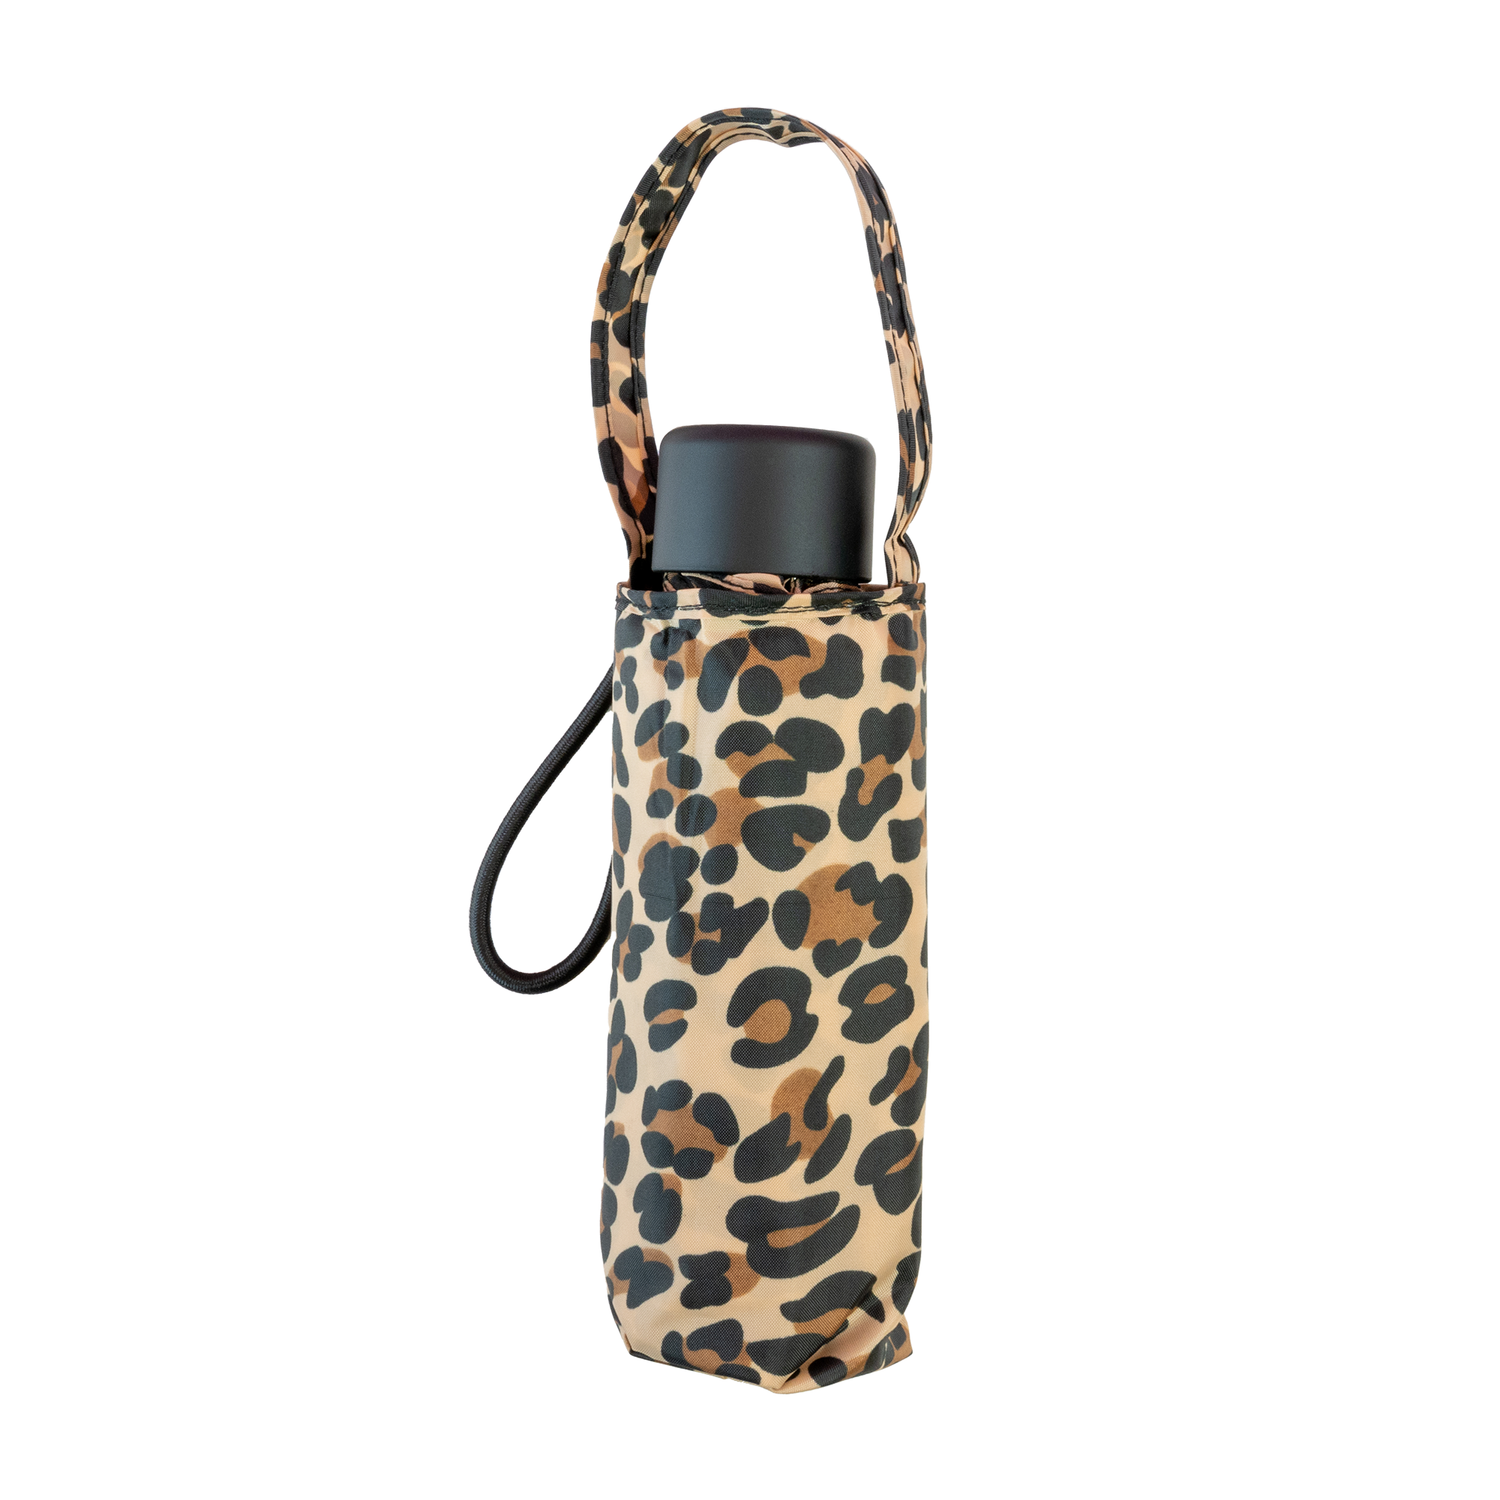 totes Mini Travel Umbrella - leopard with bag